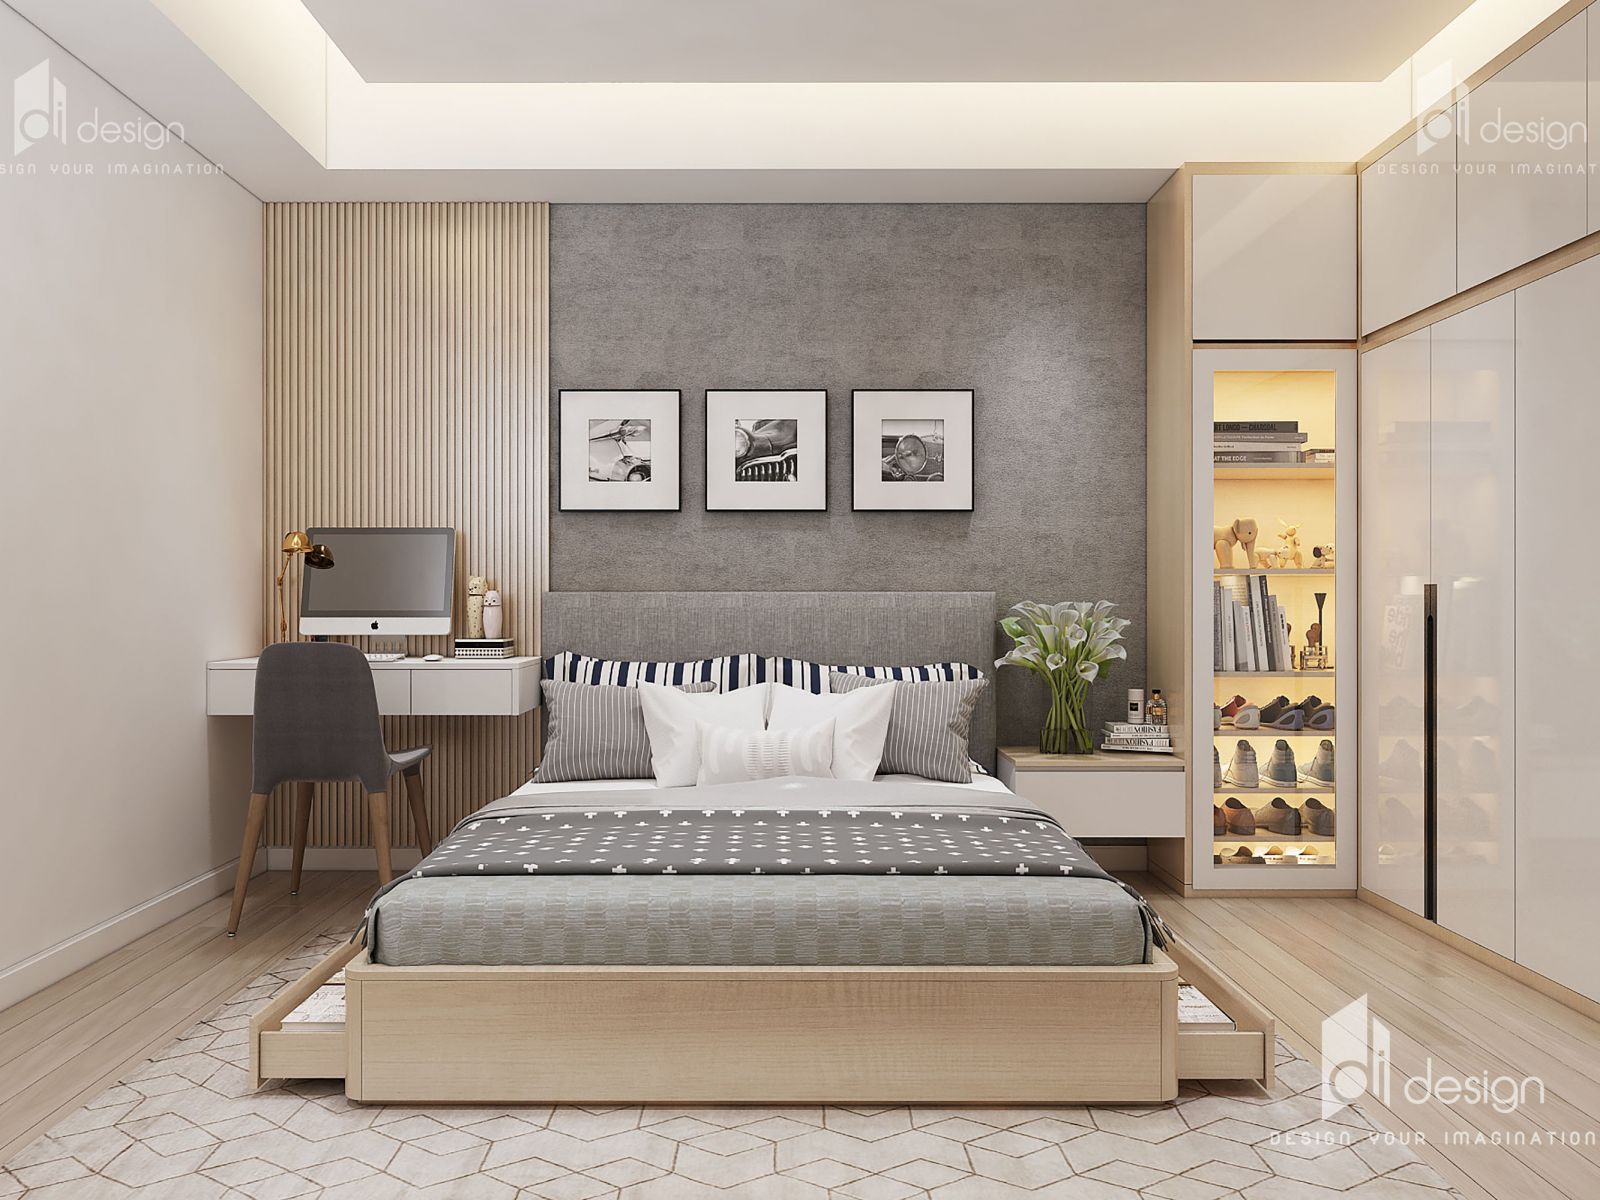 Thiết kế nội thất căn hộ Hùng Vương Plaza 120m2